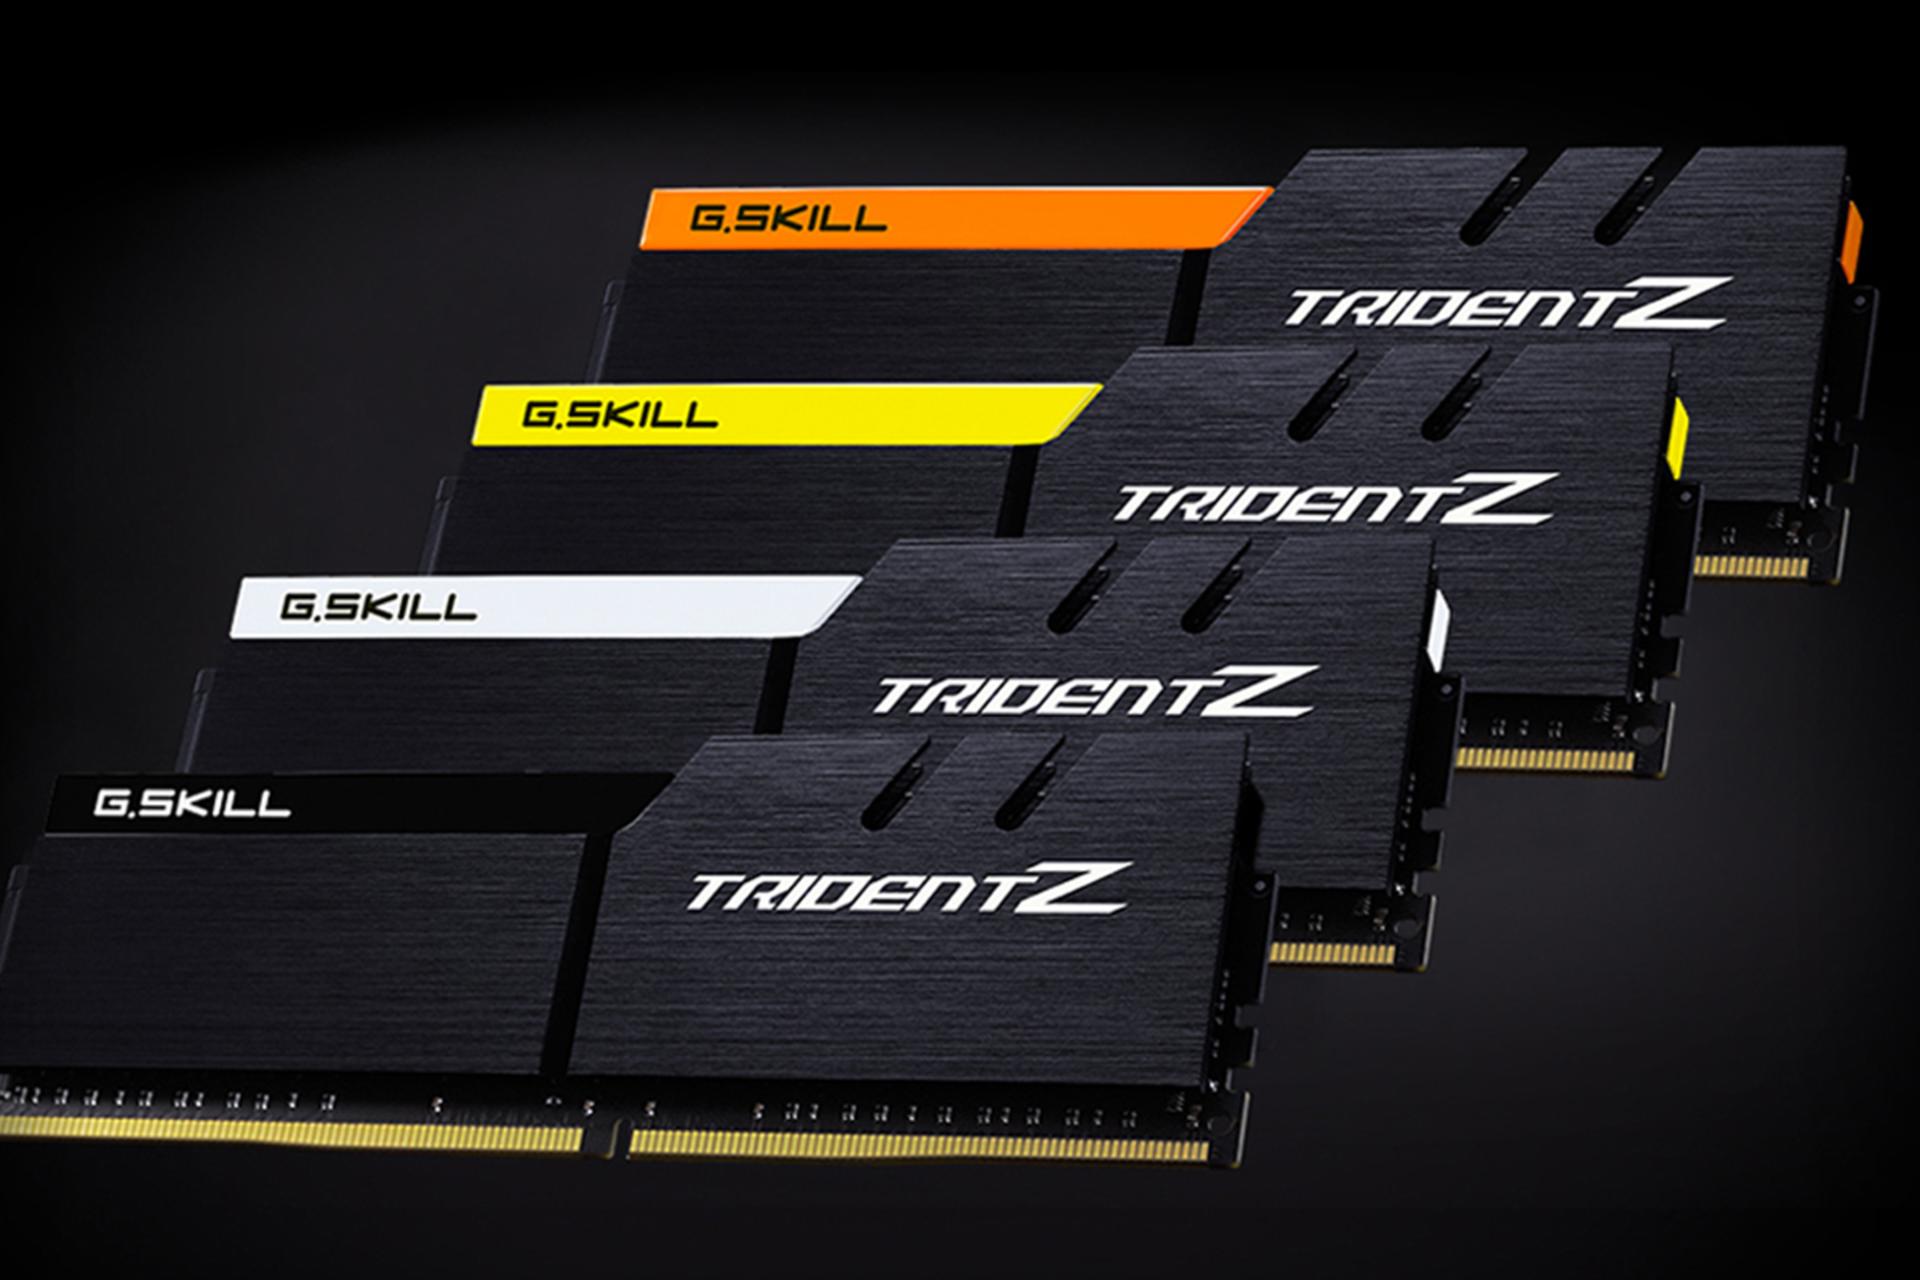 نمای جلو رم جی اسکیل Trident Z ظرفیت 16 گیگابایت (2x8) از نوع DDR4-3000